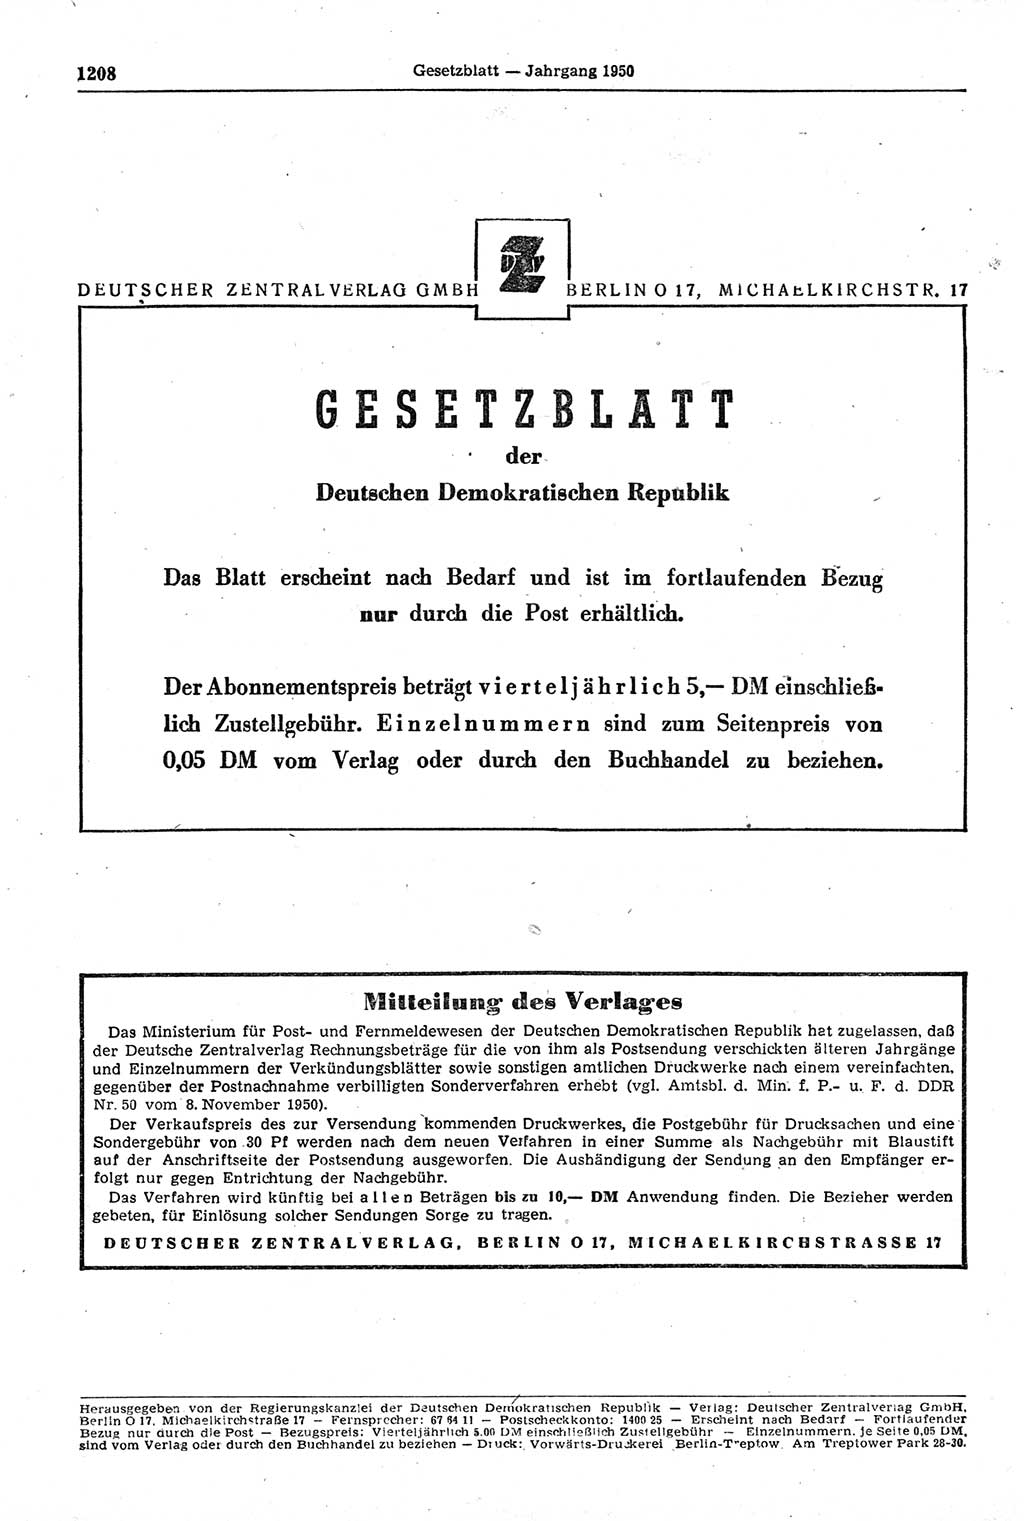 Gesetzblatt (GBl.) der Deutschen Demokratischen Republik (DDR) 1950, Seite 1208 (GBl. DDR 1950, S. 1208)